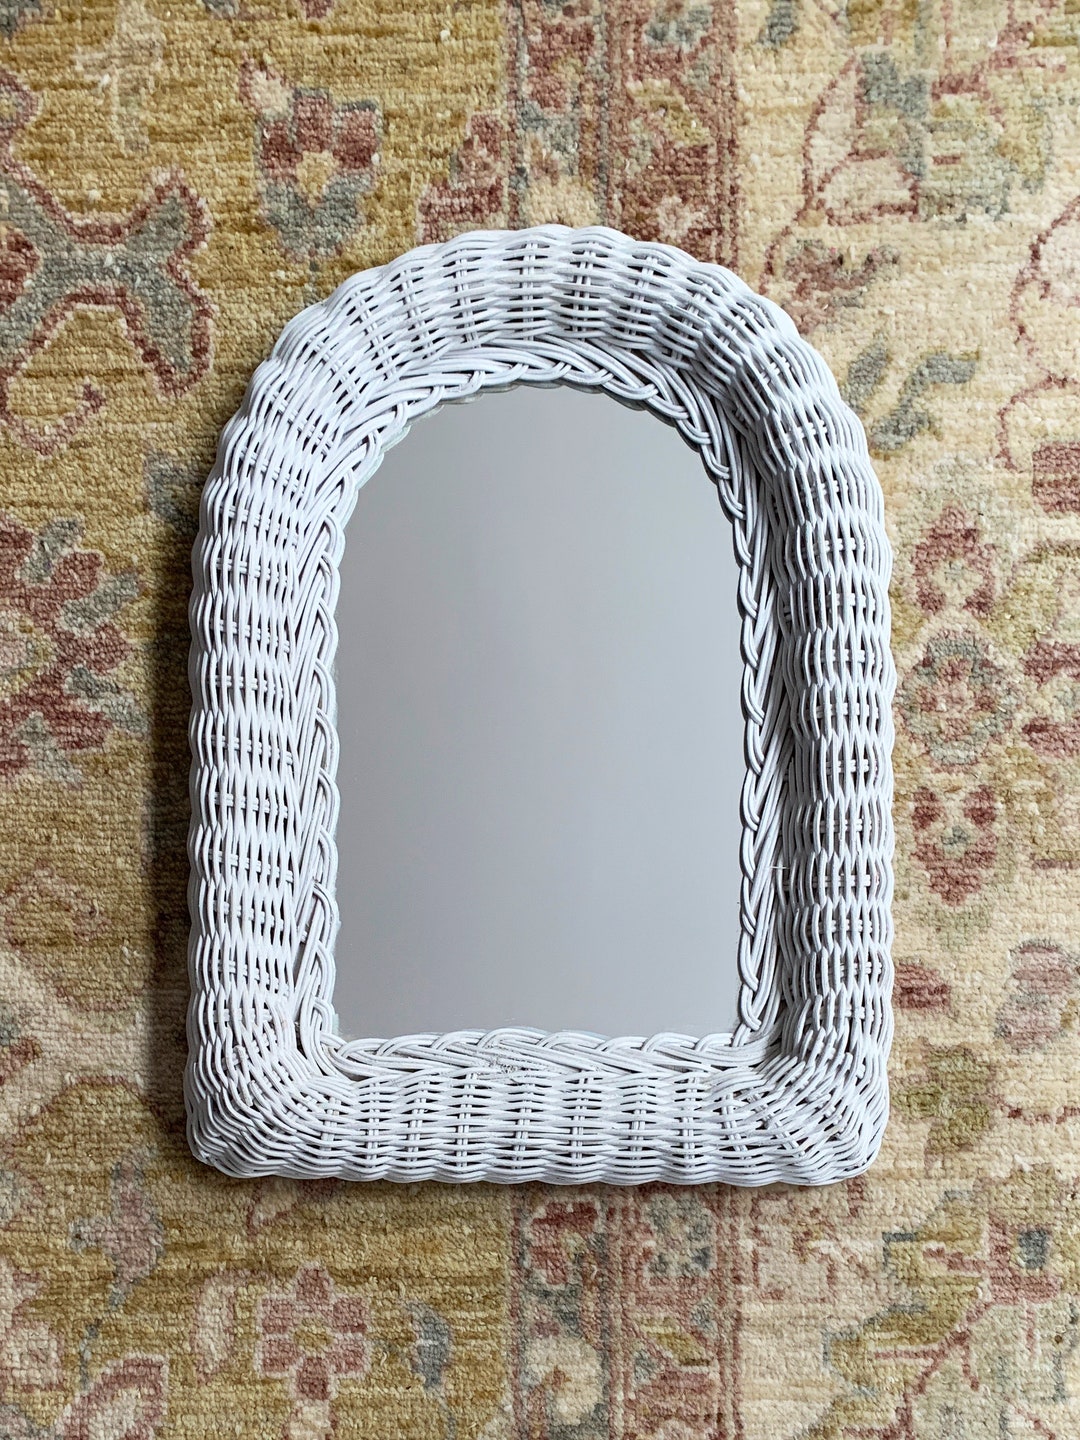 Vintage Wicker Heart Shaped Mirror in White